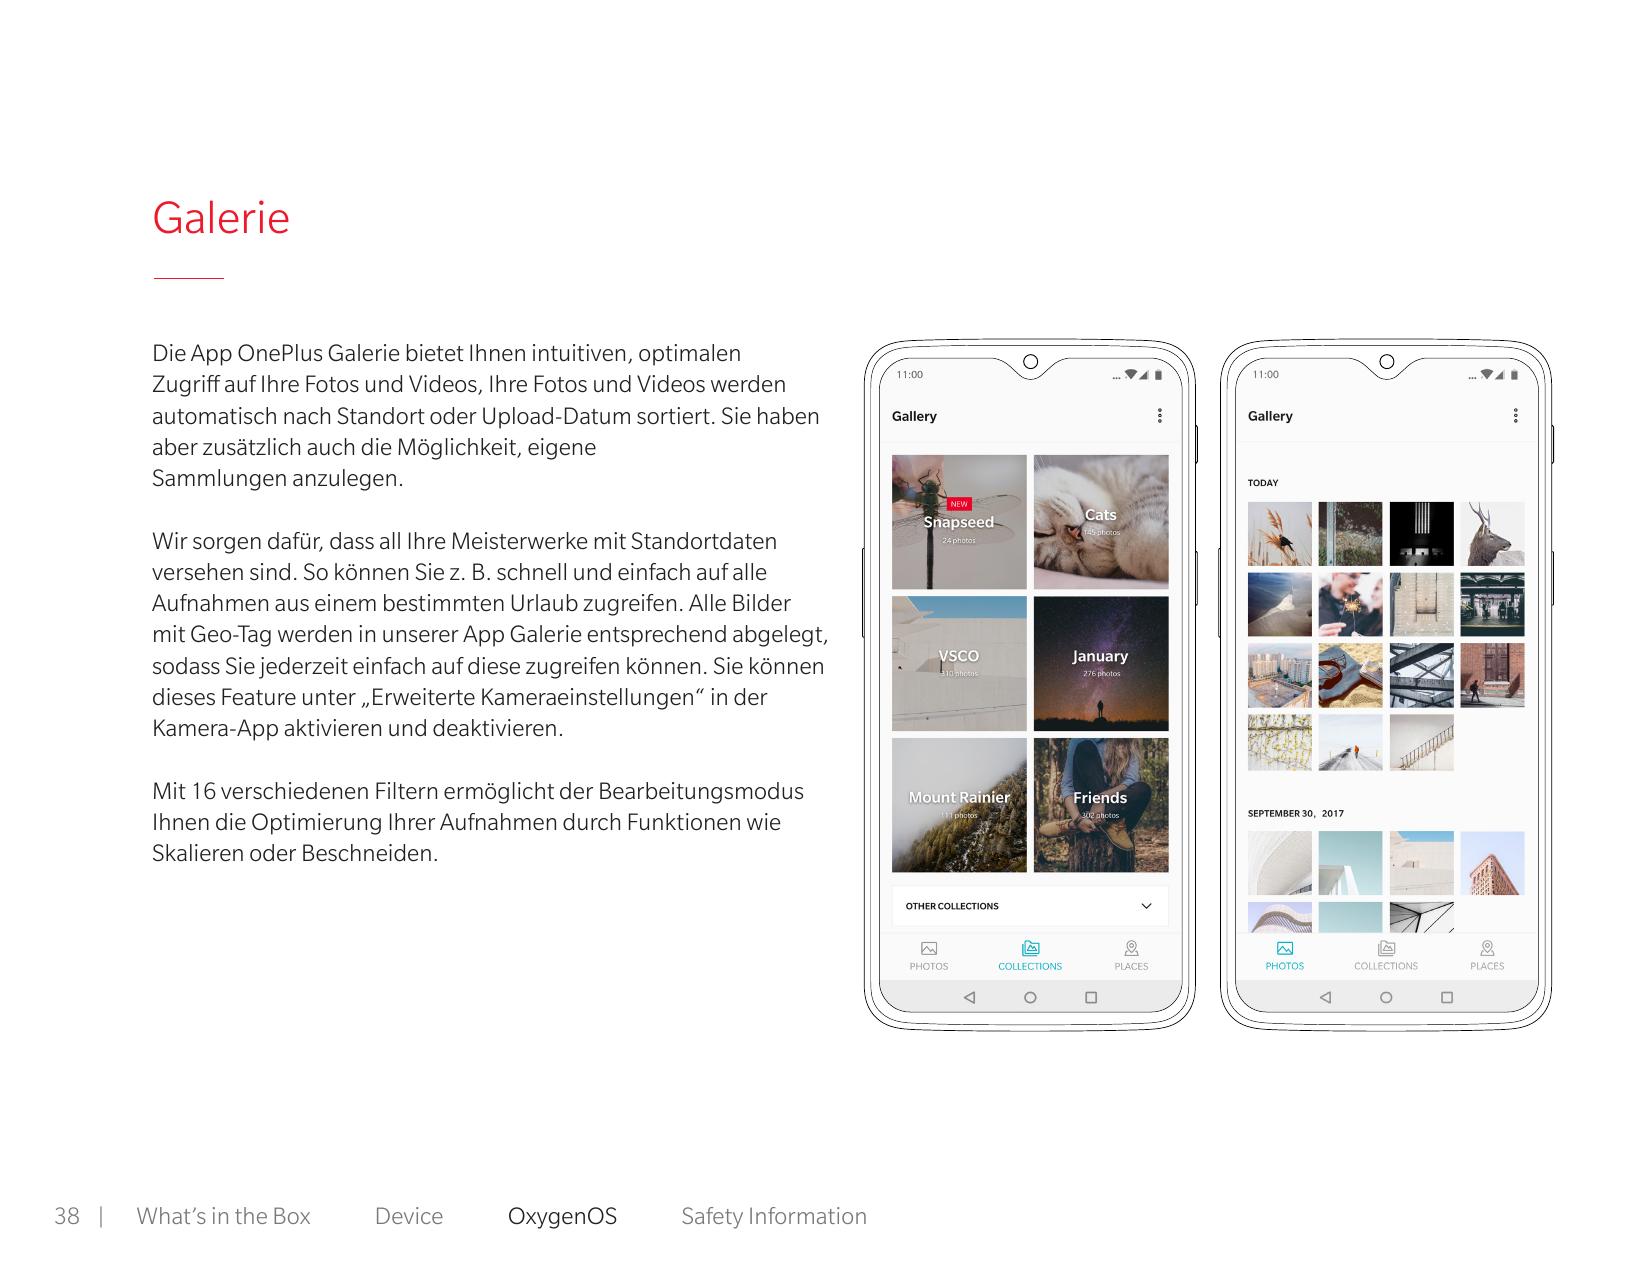 GalerieDie App OnePlus Galerie bietet Ihnen intuitiven, optimalenZugriff auf Ihre Fotos und Videos, Ihre Fotos und Videos werden